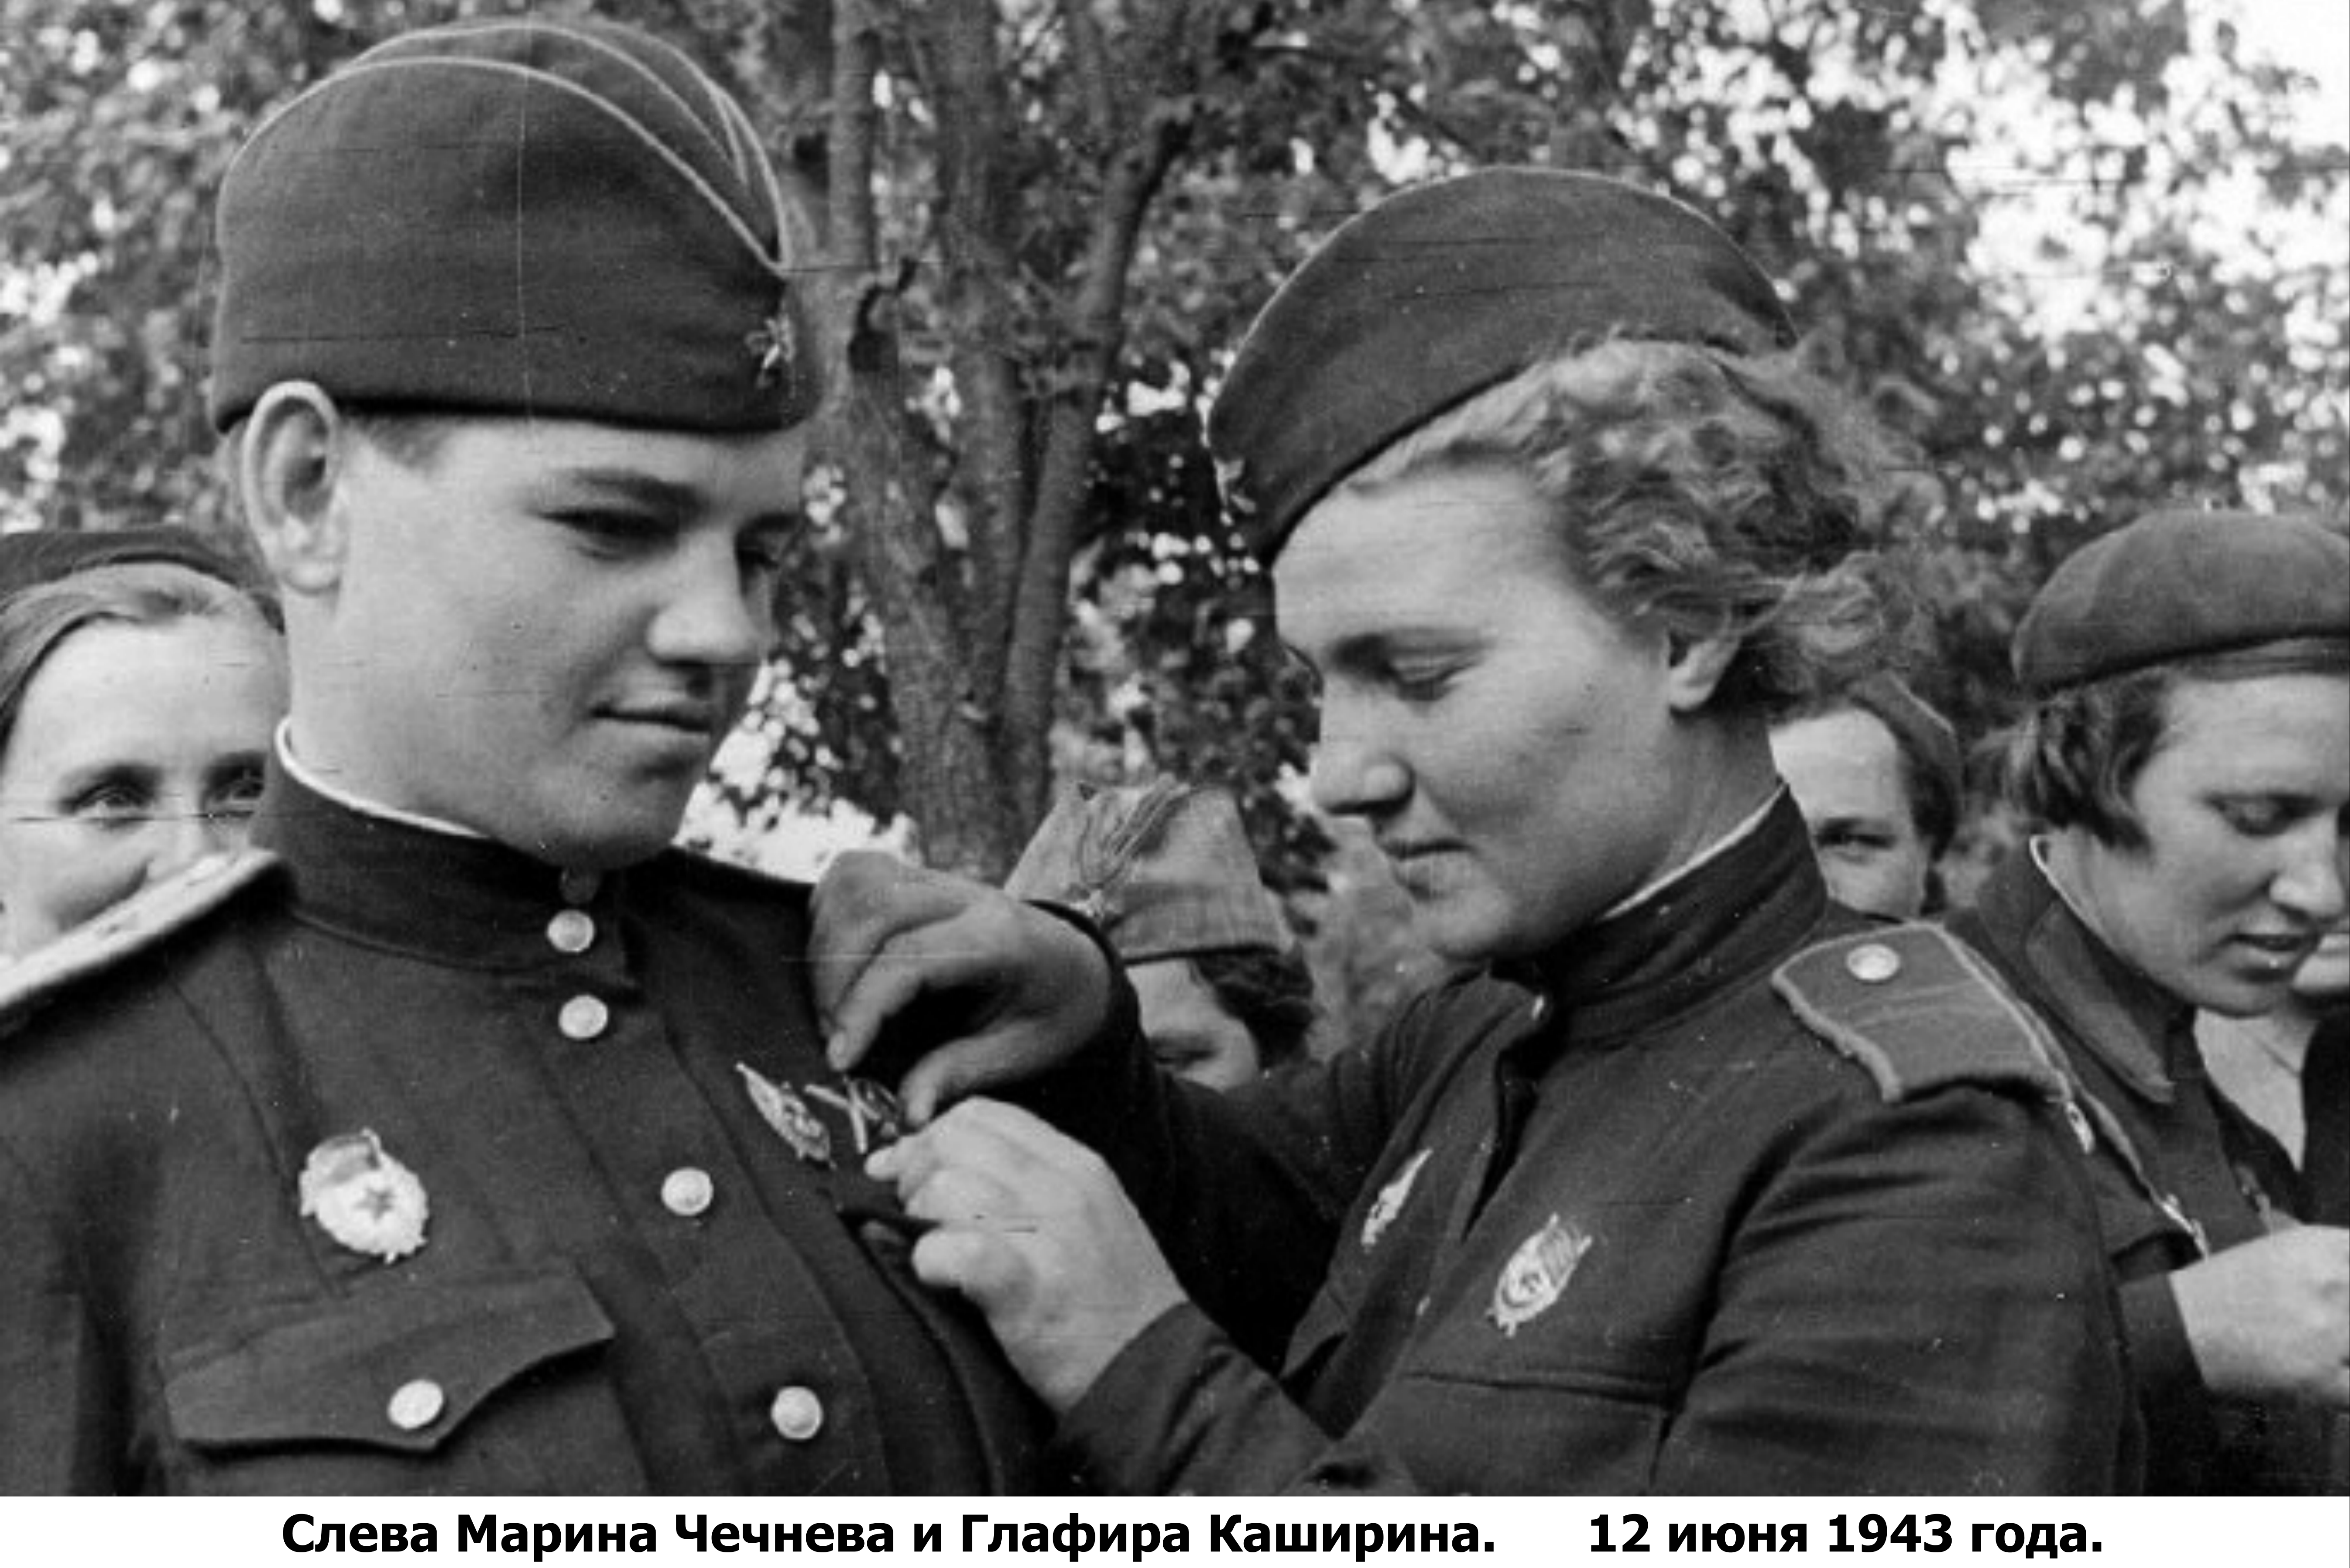 Женщины солдаты в годы ВОВ